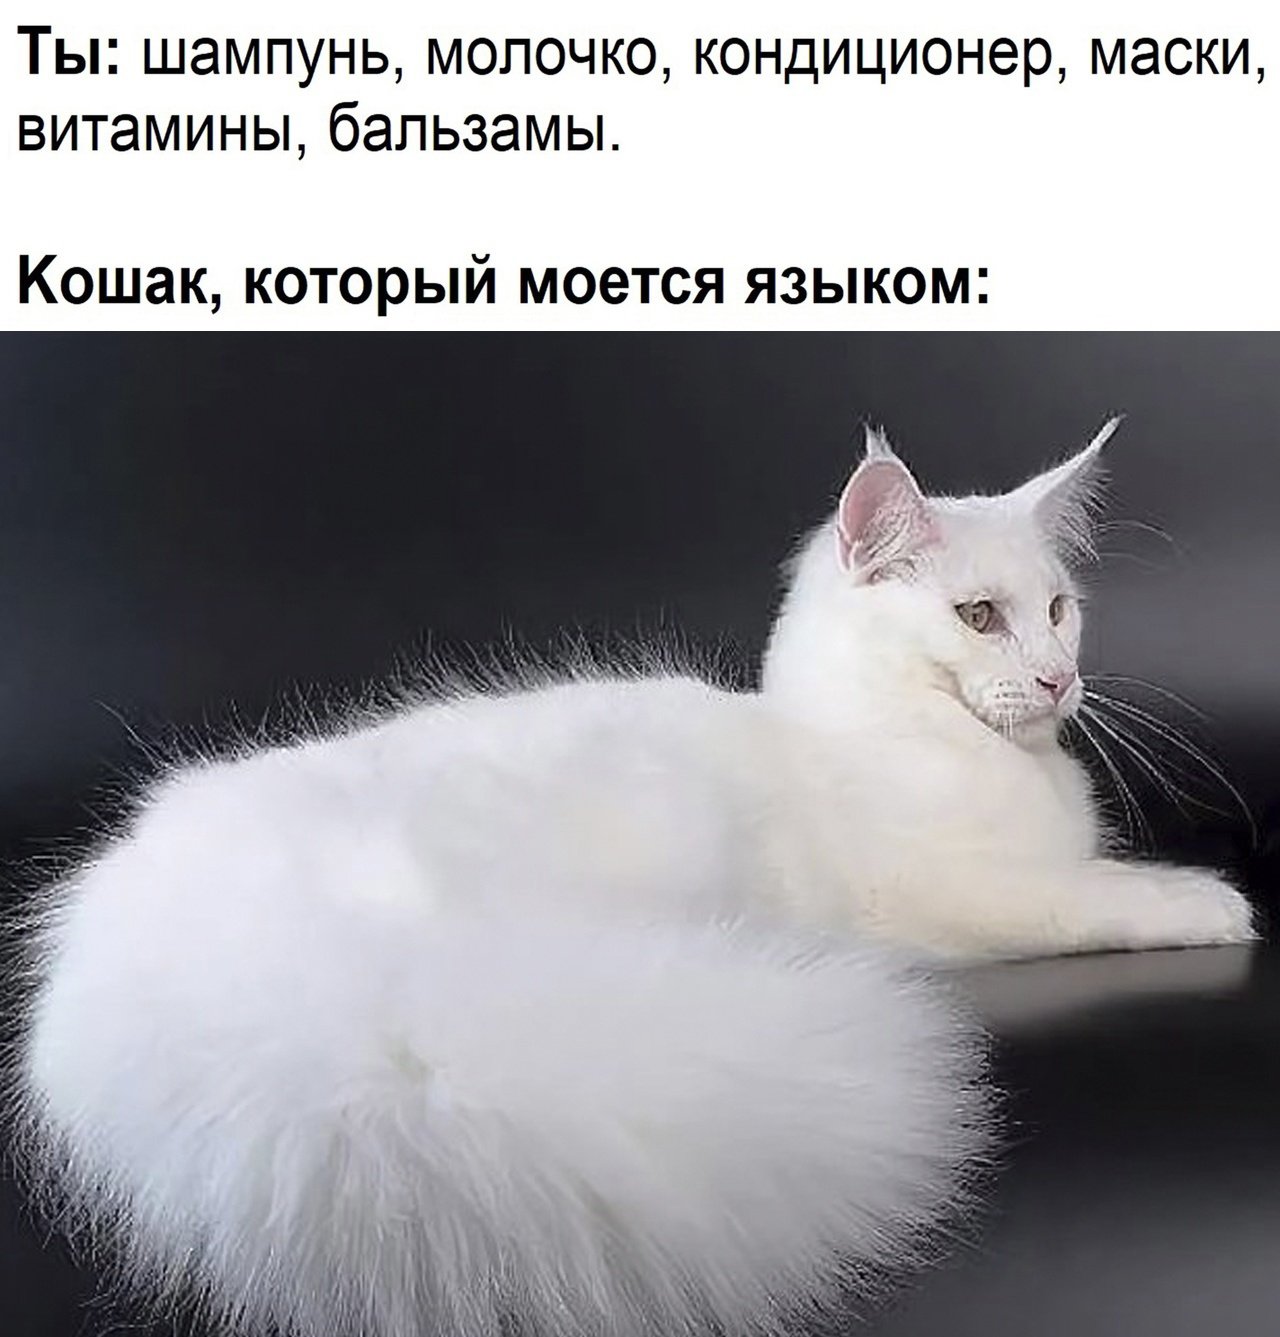 Длинная шерсть на хвосте. Сиамская ангорская кошка. Сибирская кошка белая. Турецкая ангора биколор серая. Мейн кун ангора.